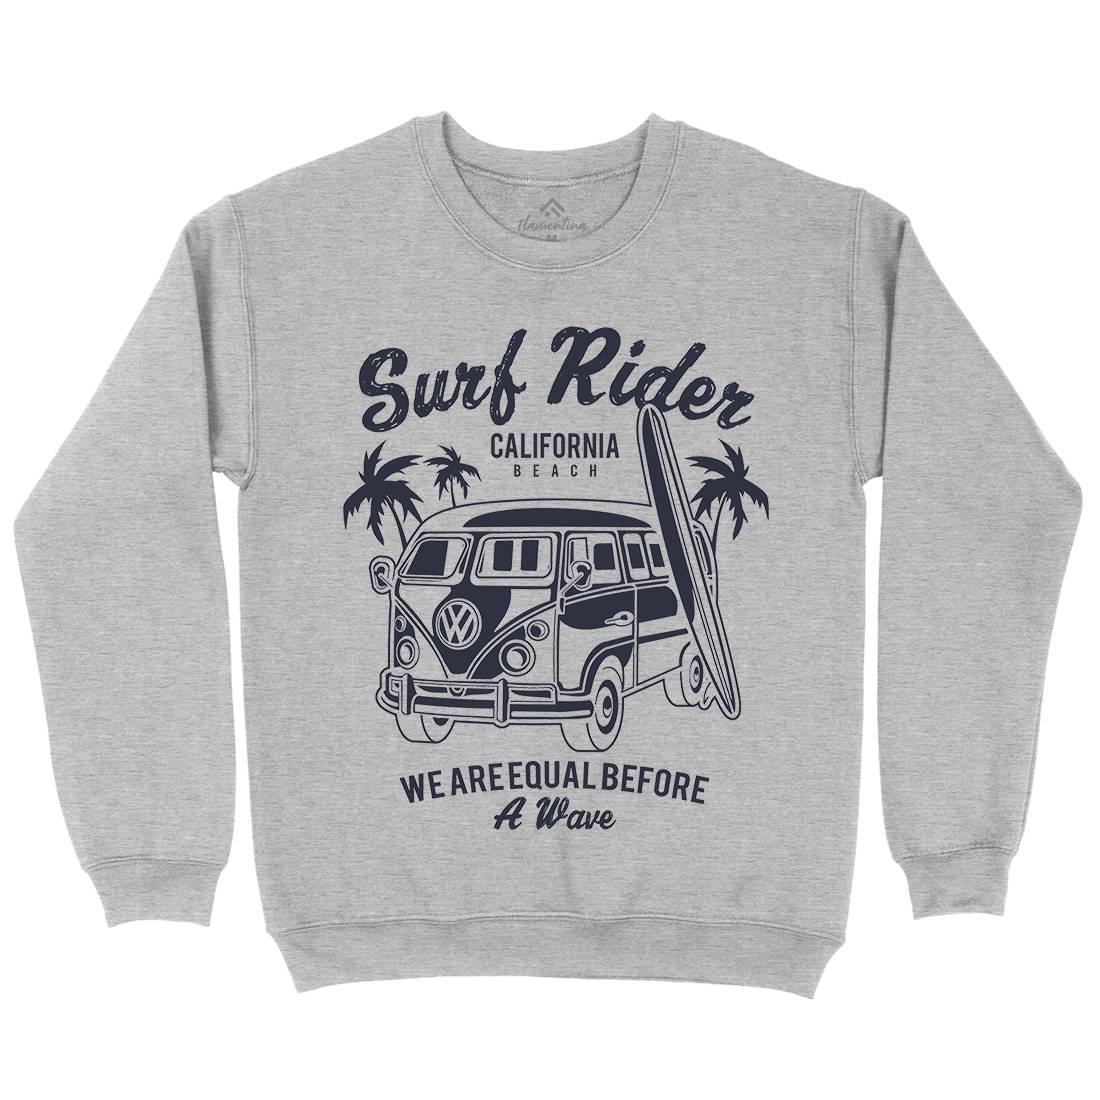 Rider Mens Crew Neck Sweatshirt Surf A169